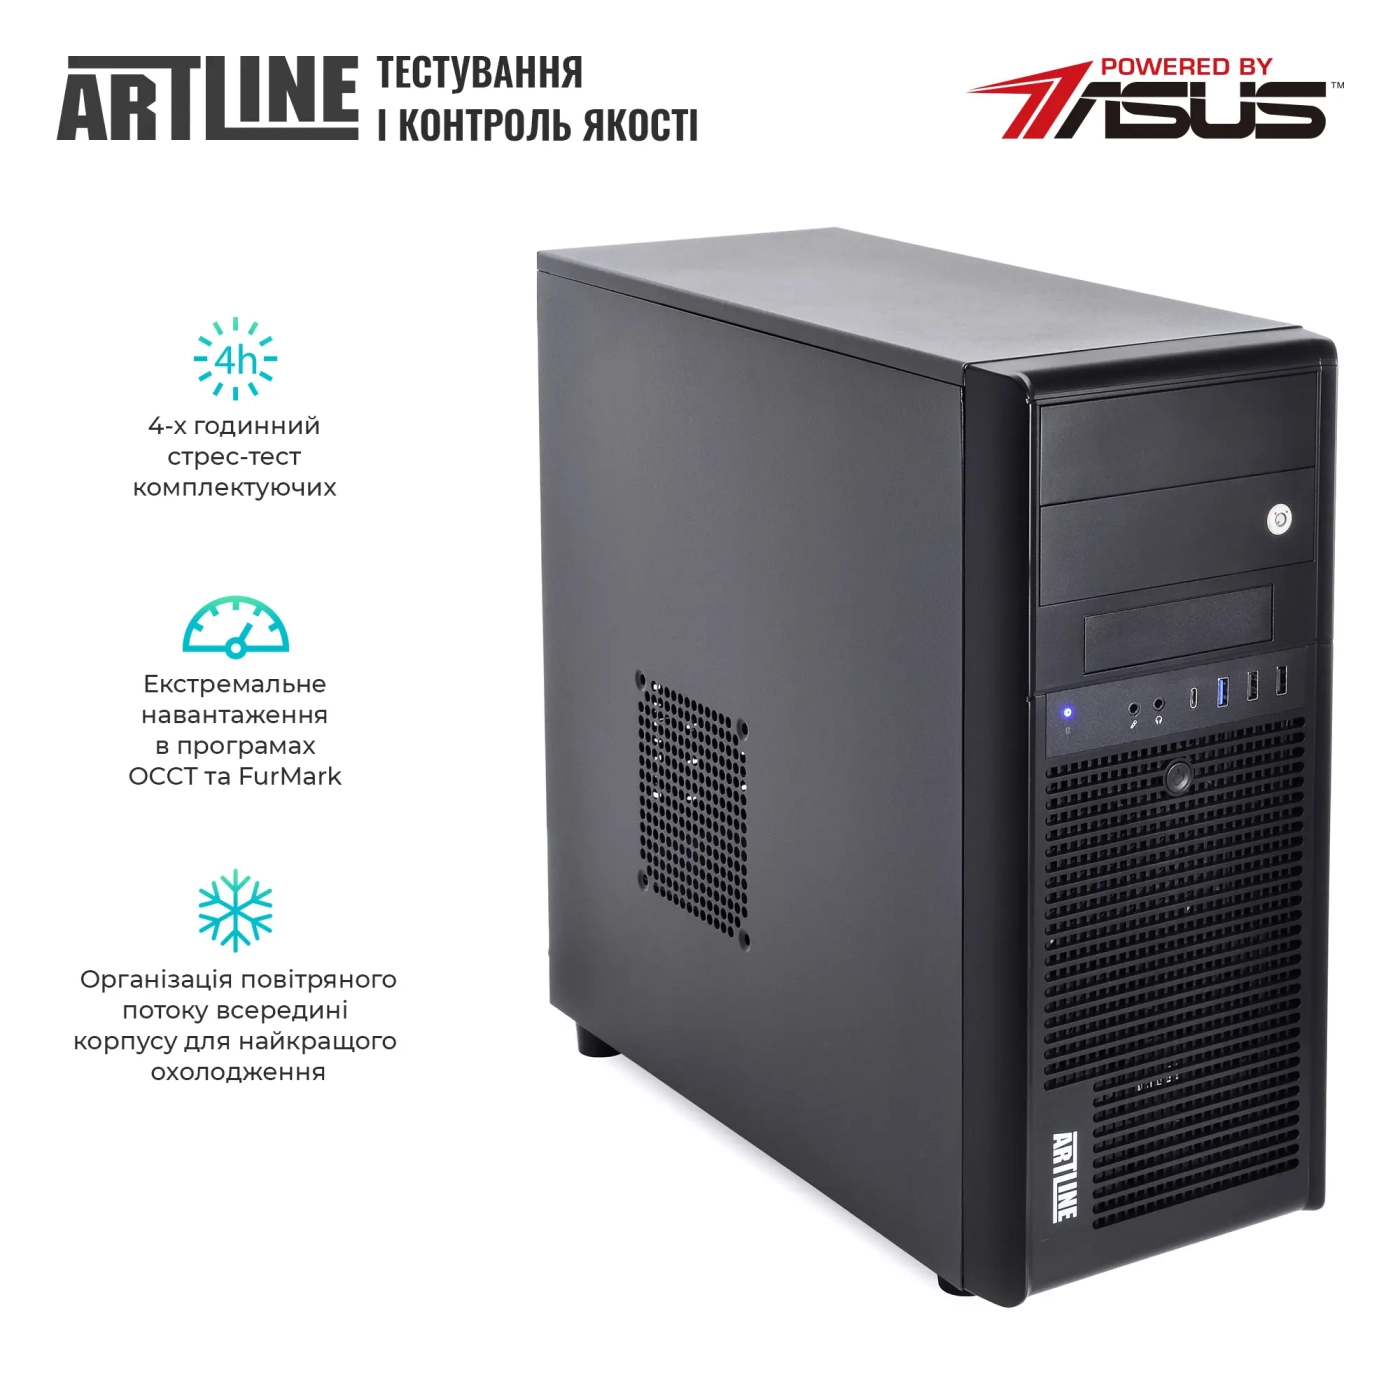 Купить Сервер ARTLINE Business T35 (T35v42) - фото 7